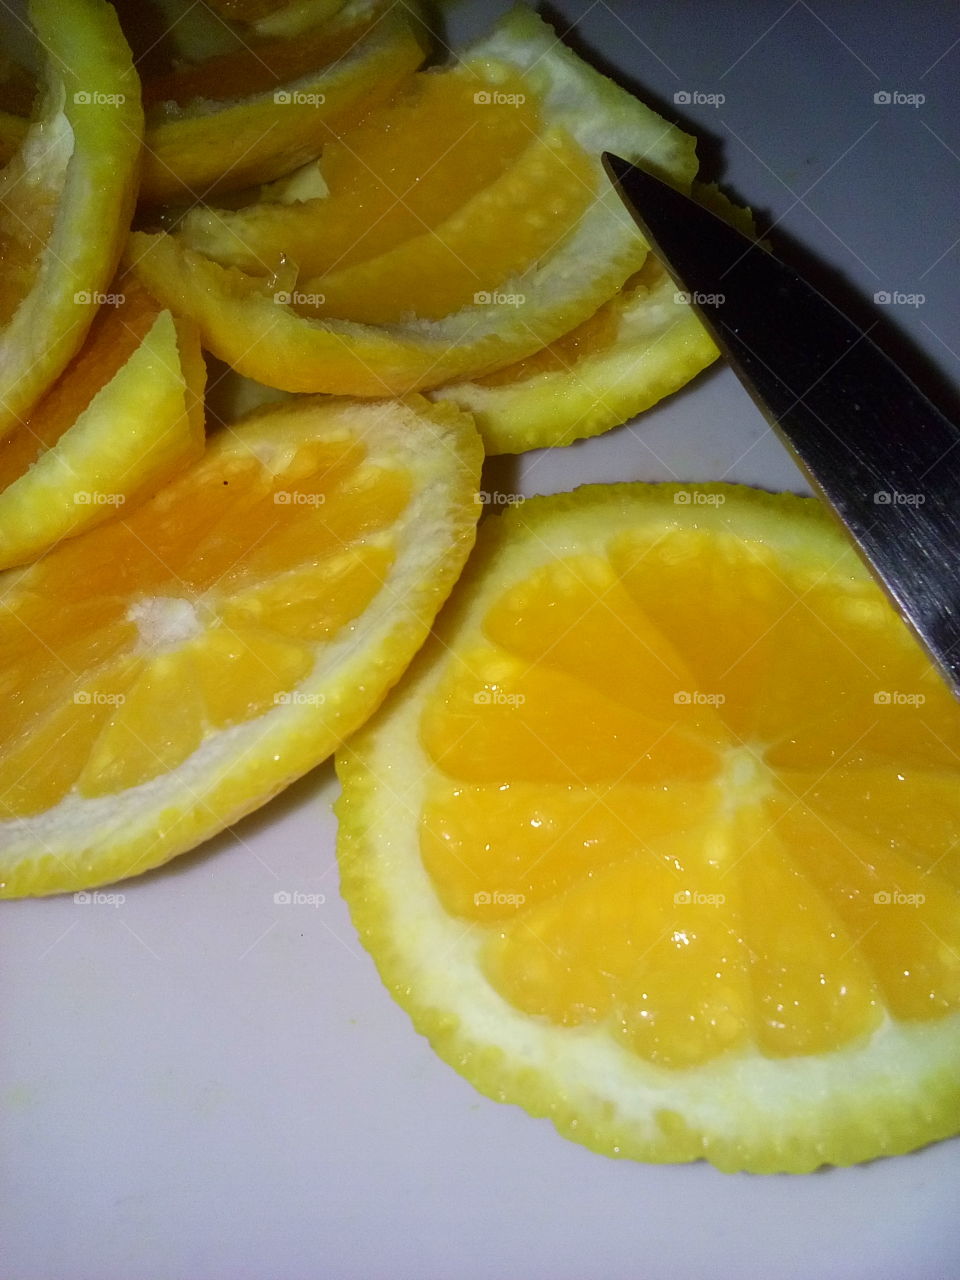 Cut Oranges & Tip of Knife